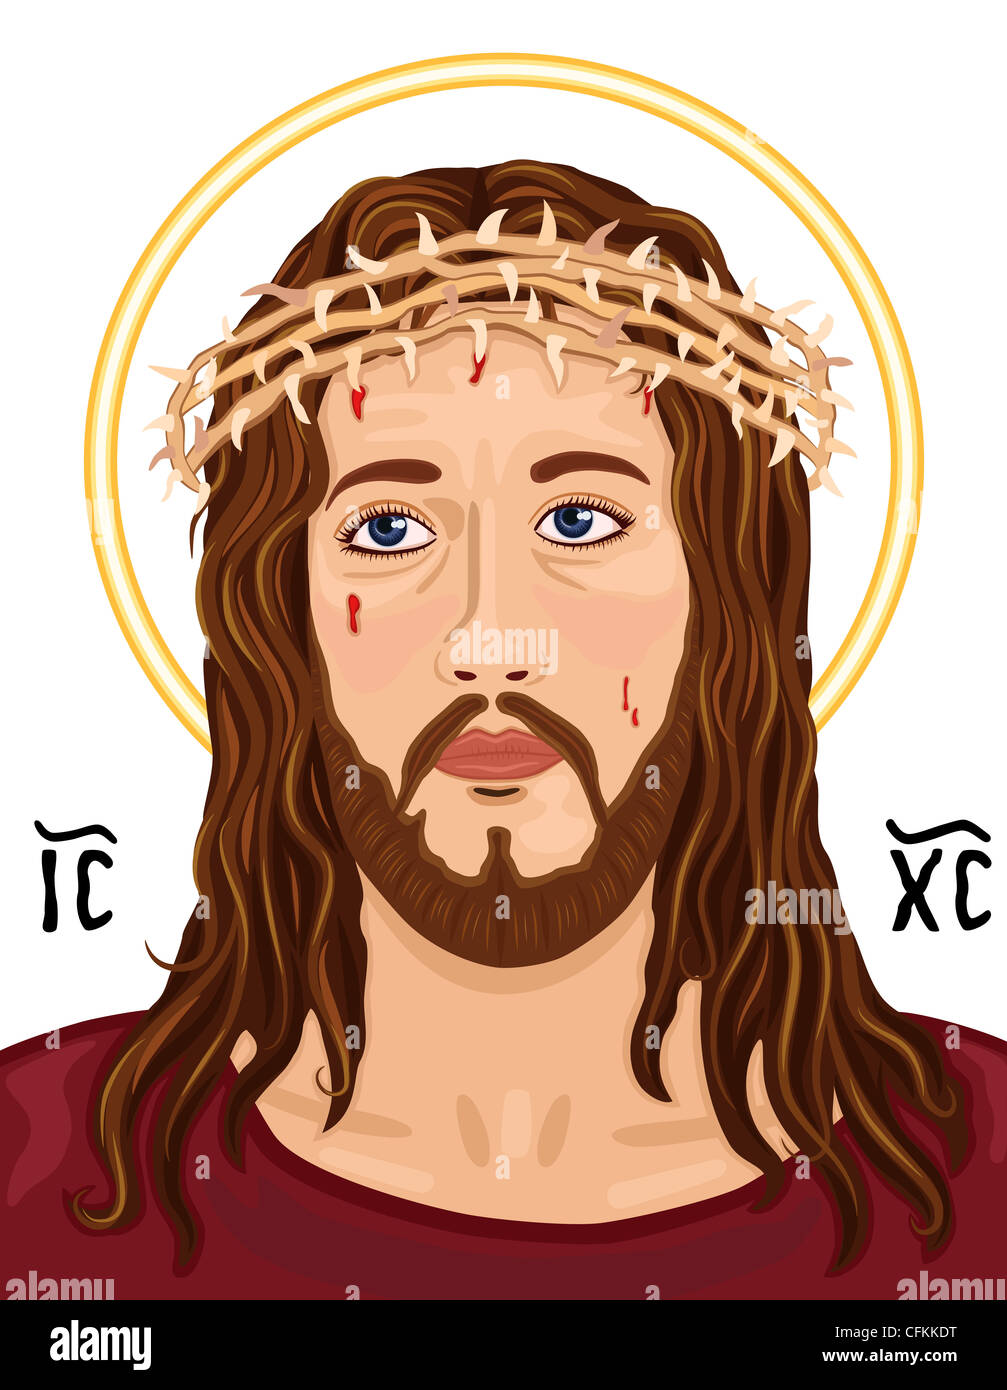 Icône religieuse - portrait de Jésus le Christ portant la couronne d'épines. Avec Christogram sacrée grecque, sur fond blanc Banque D'Images